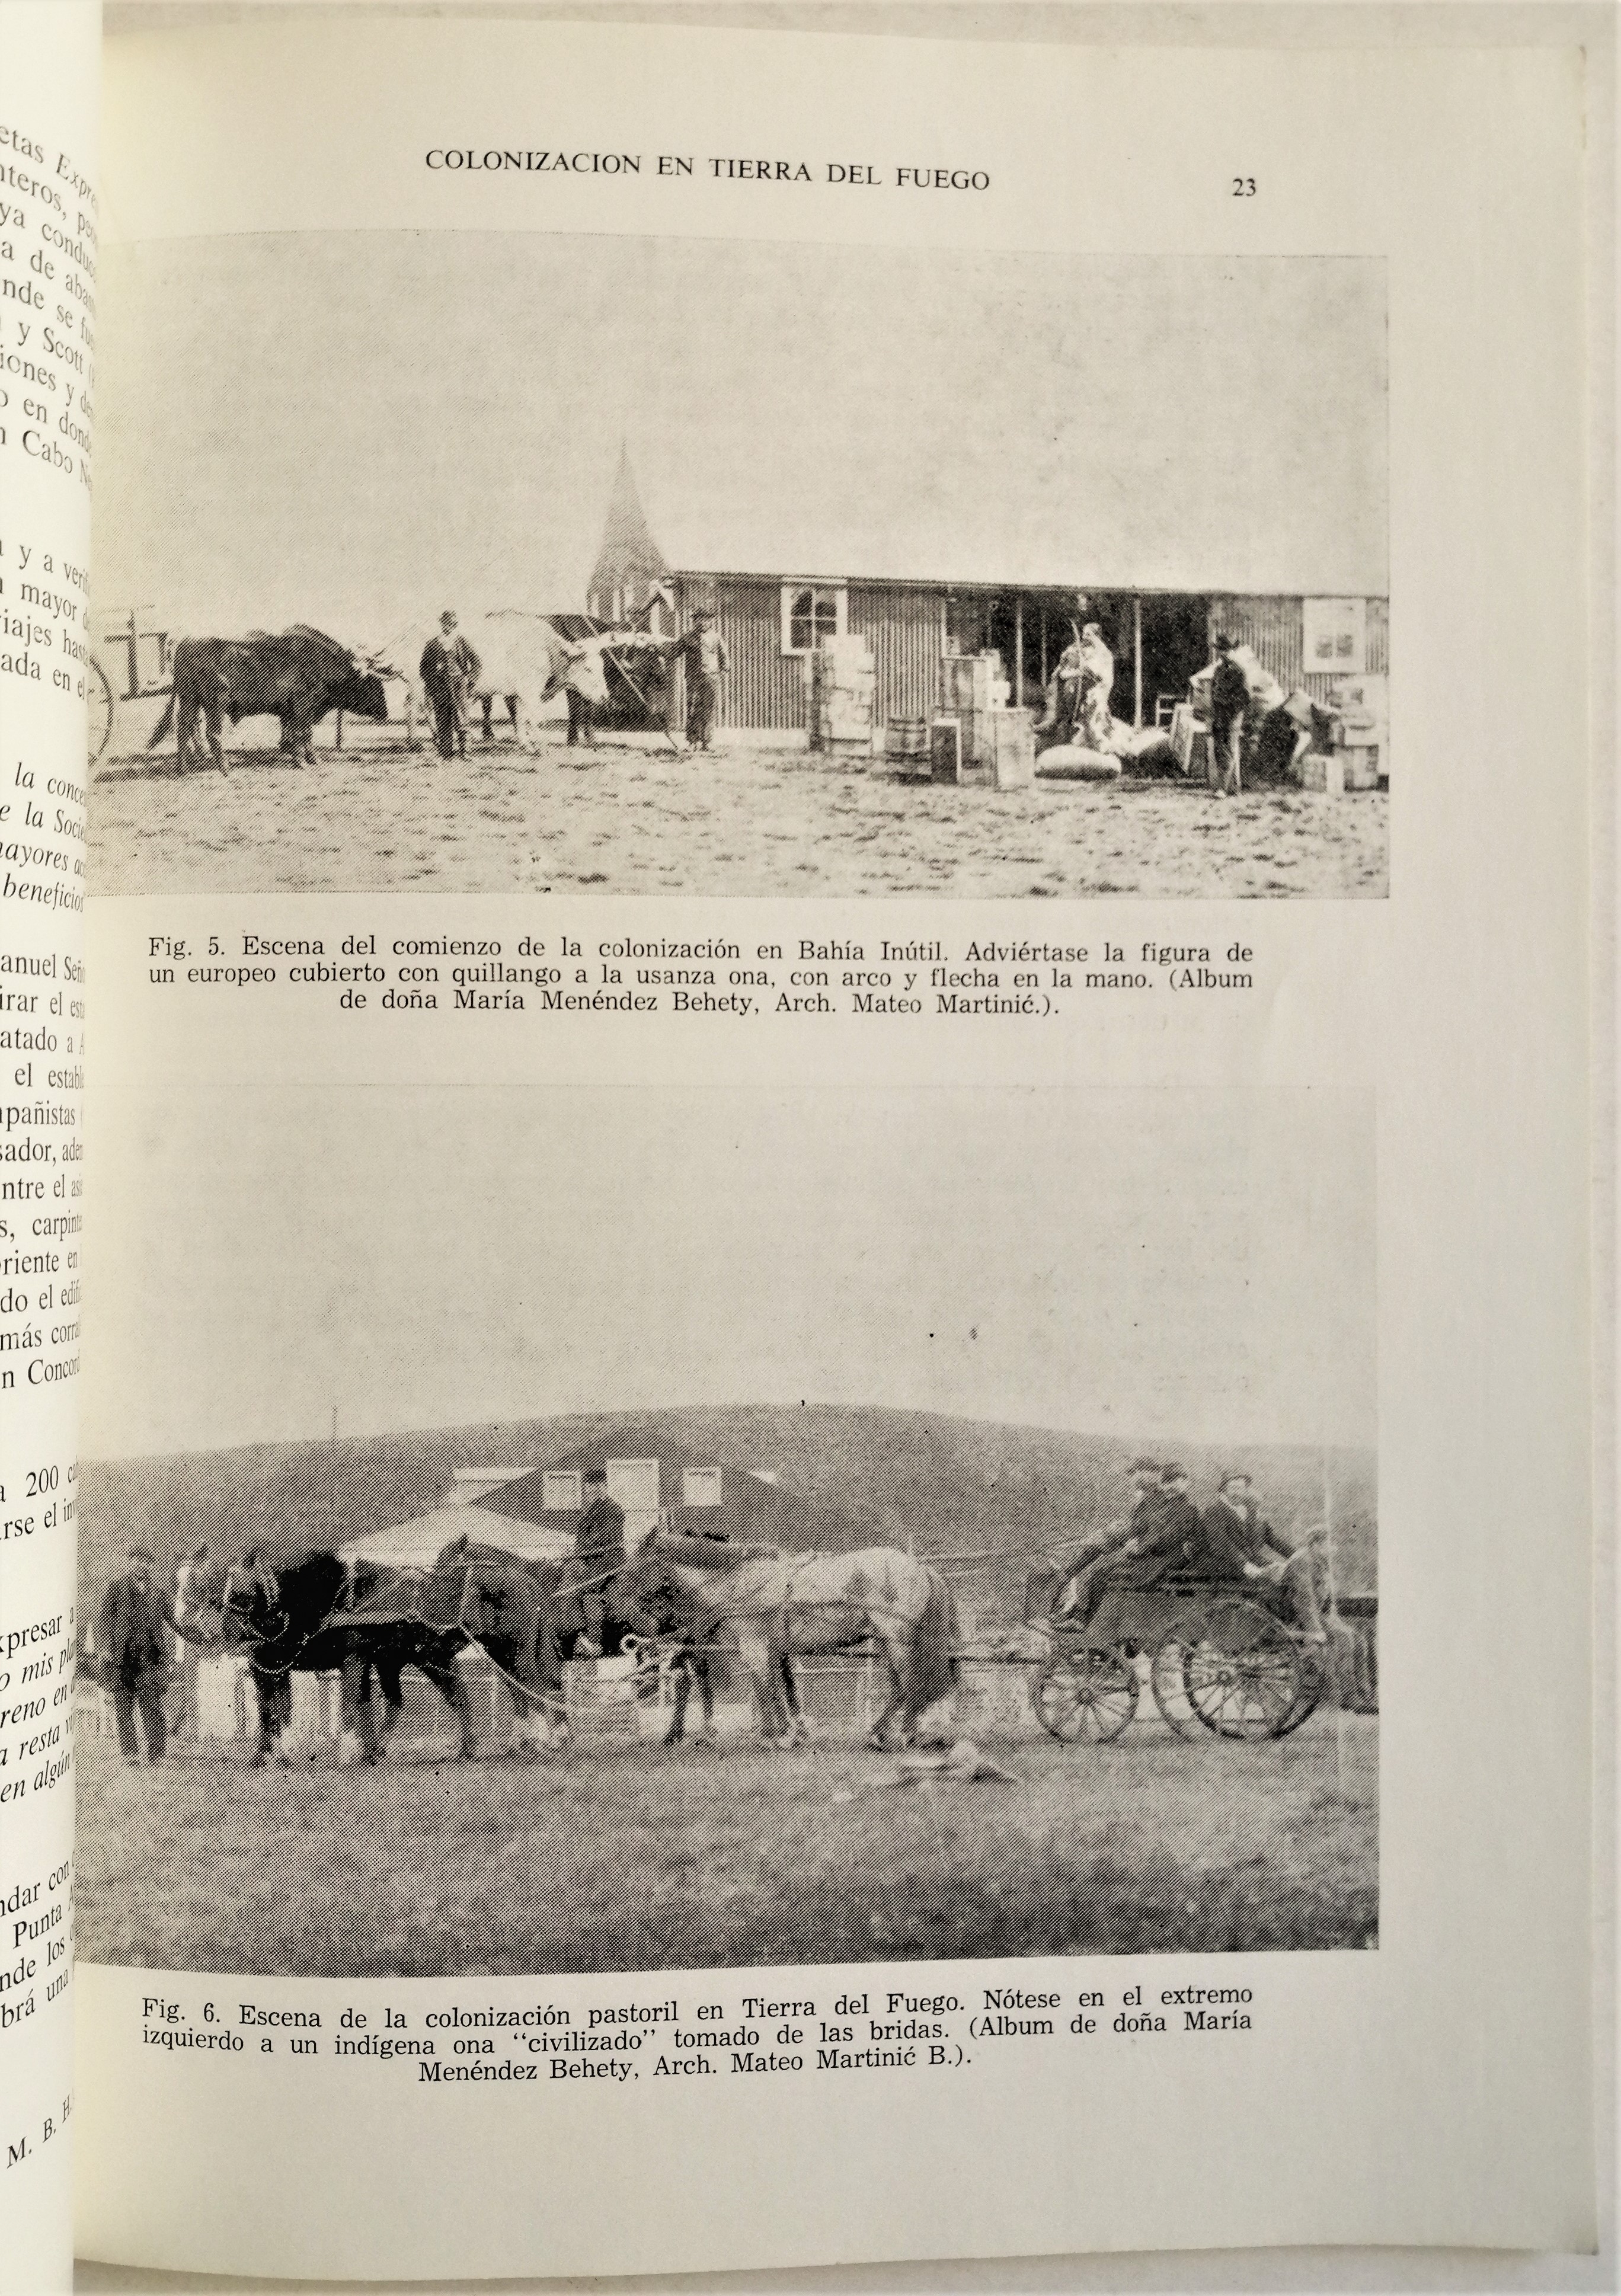 Mateo Martinic B. - Panorama de la colonización en Tierra del Fuego entre 1881 y 1900